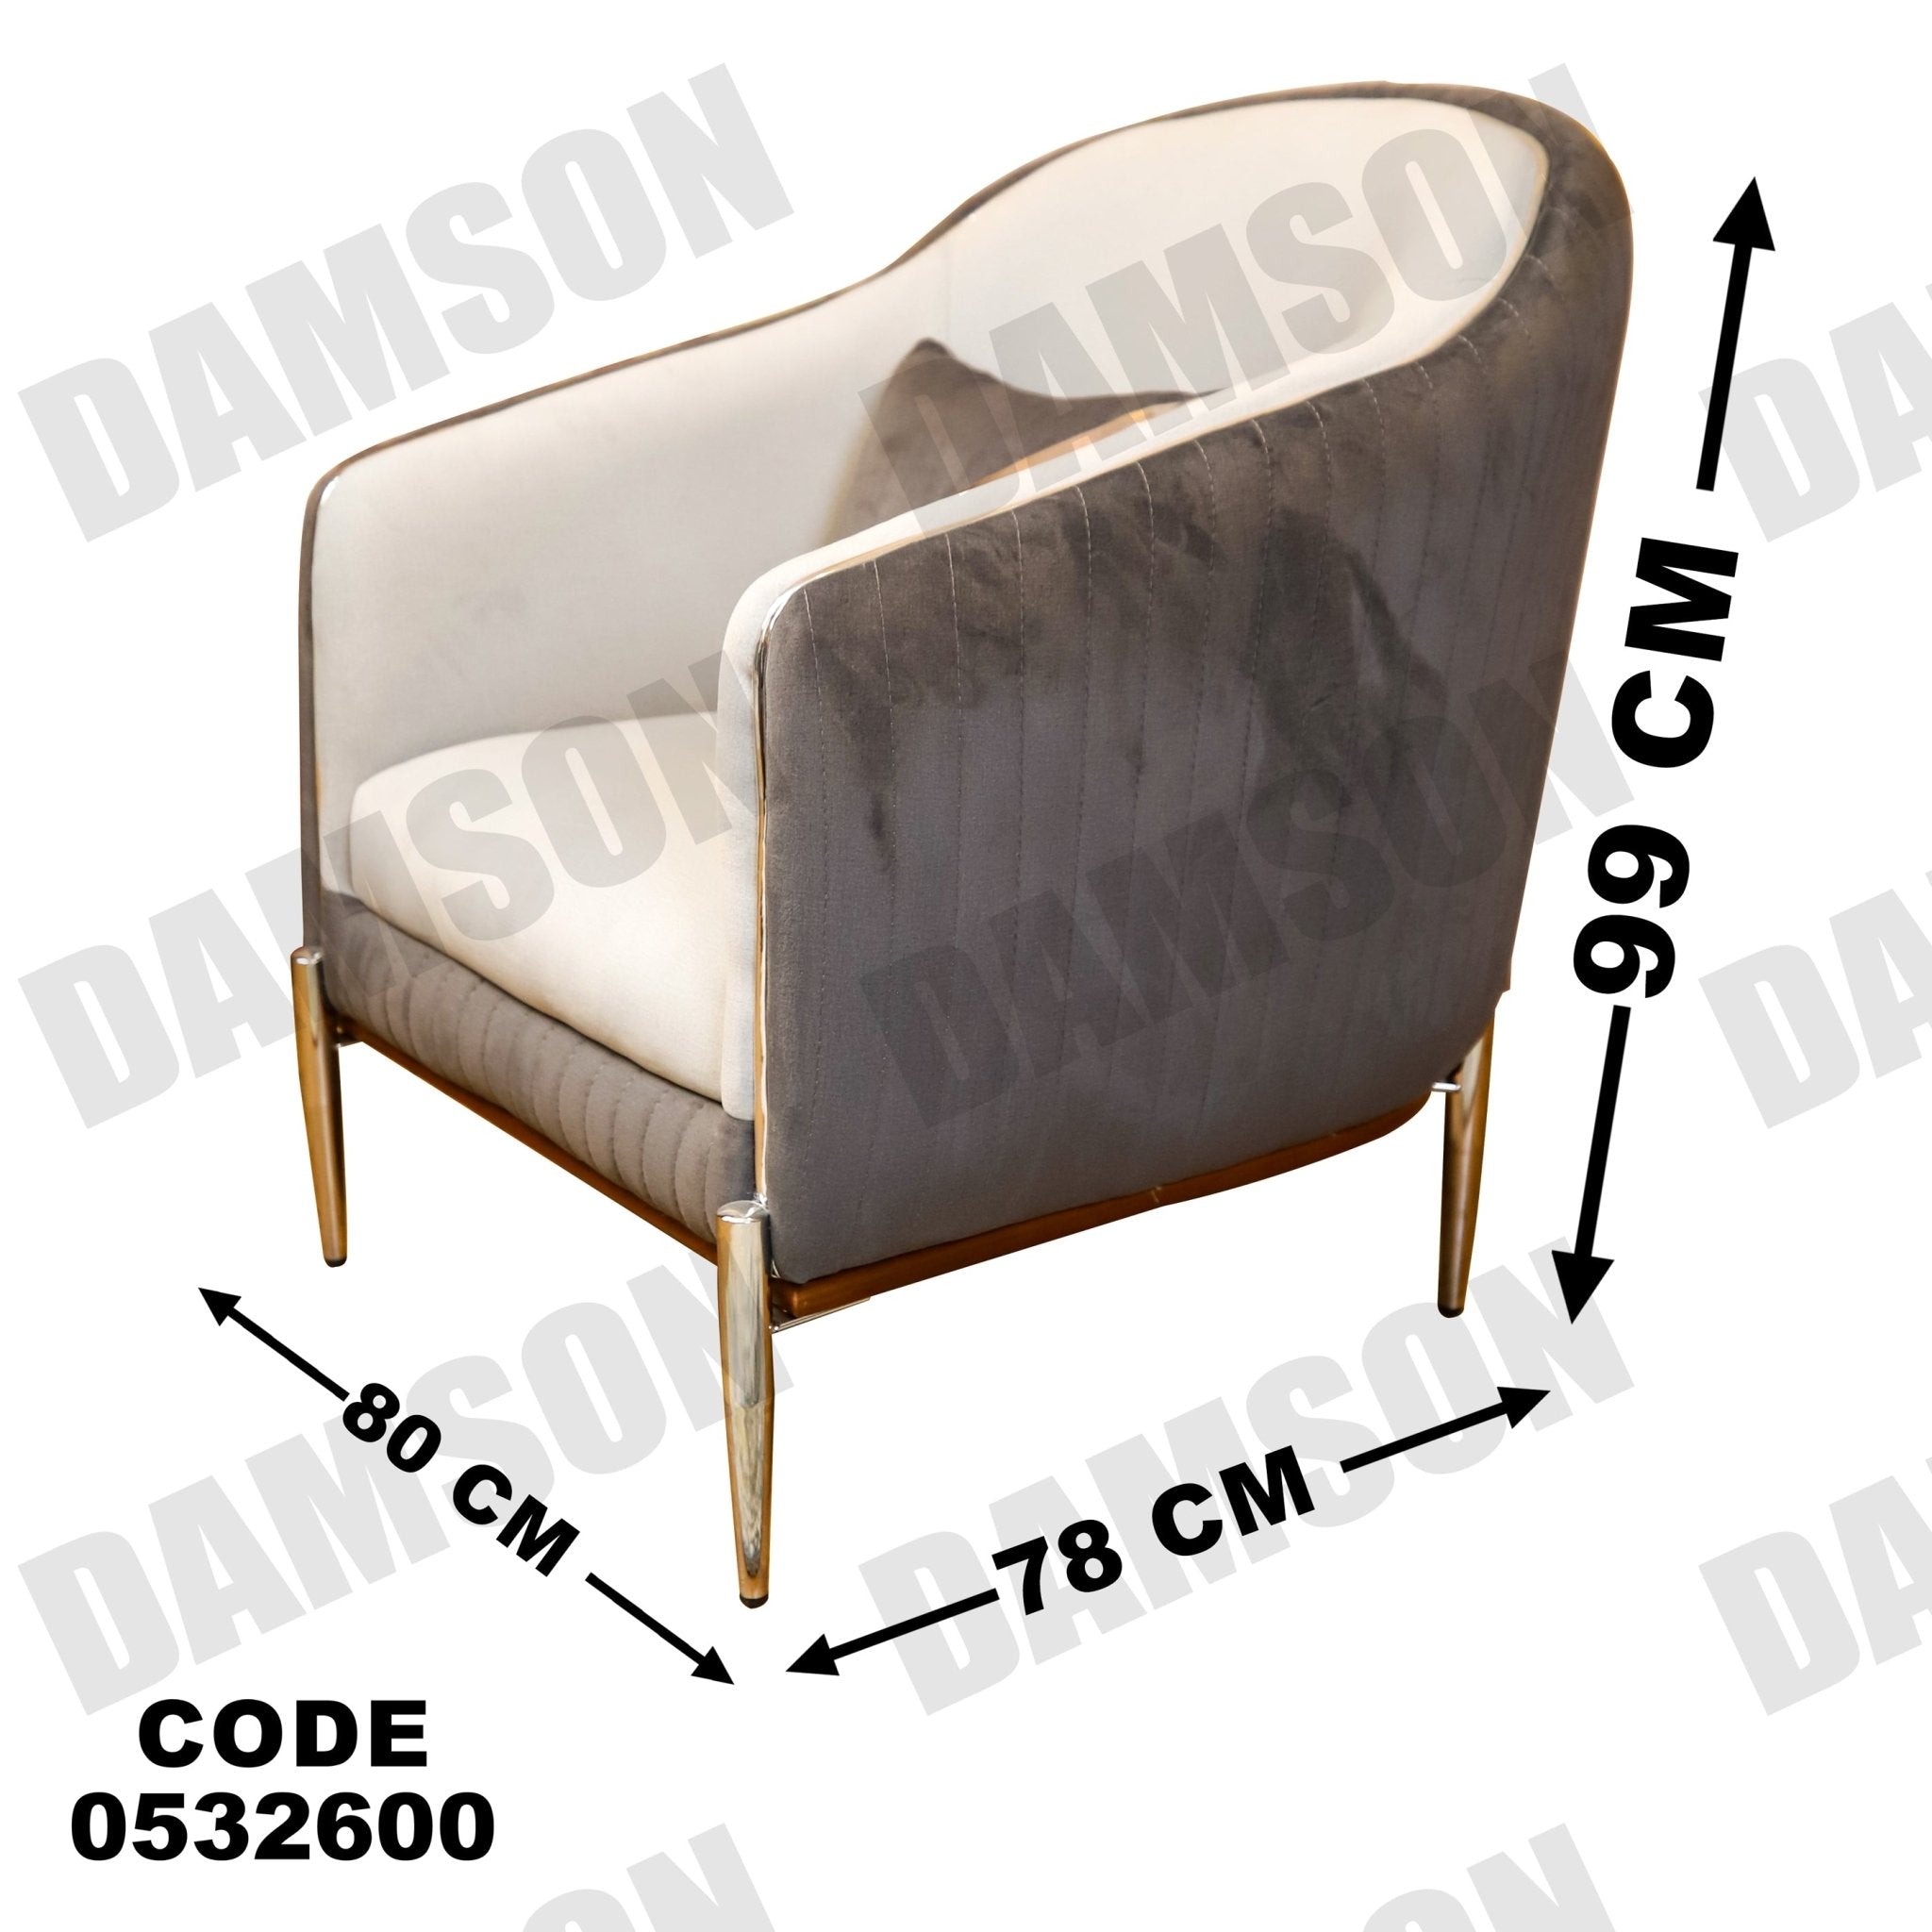 انترية 326 - Damson Furnitureانترية 326